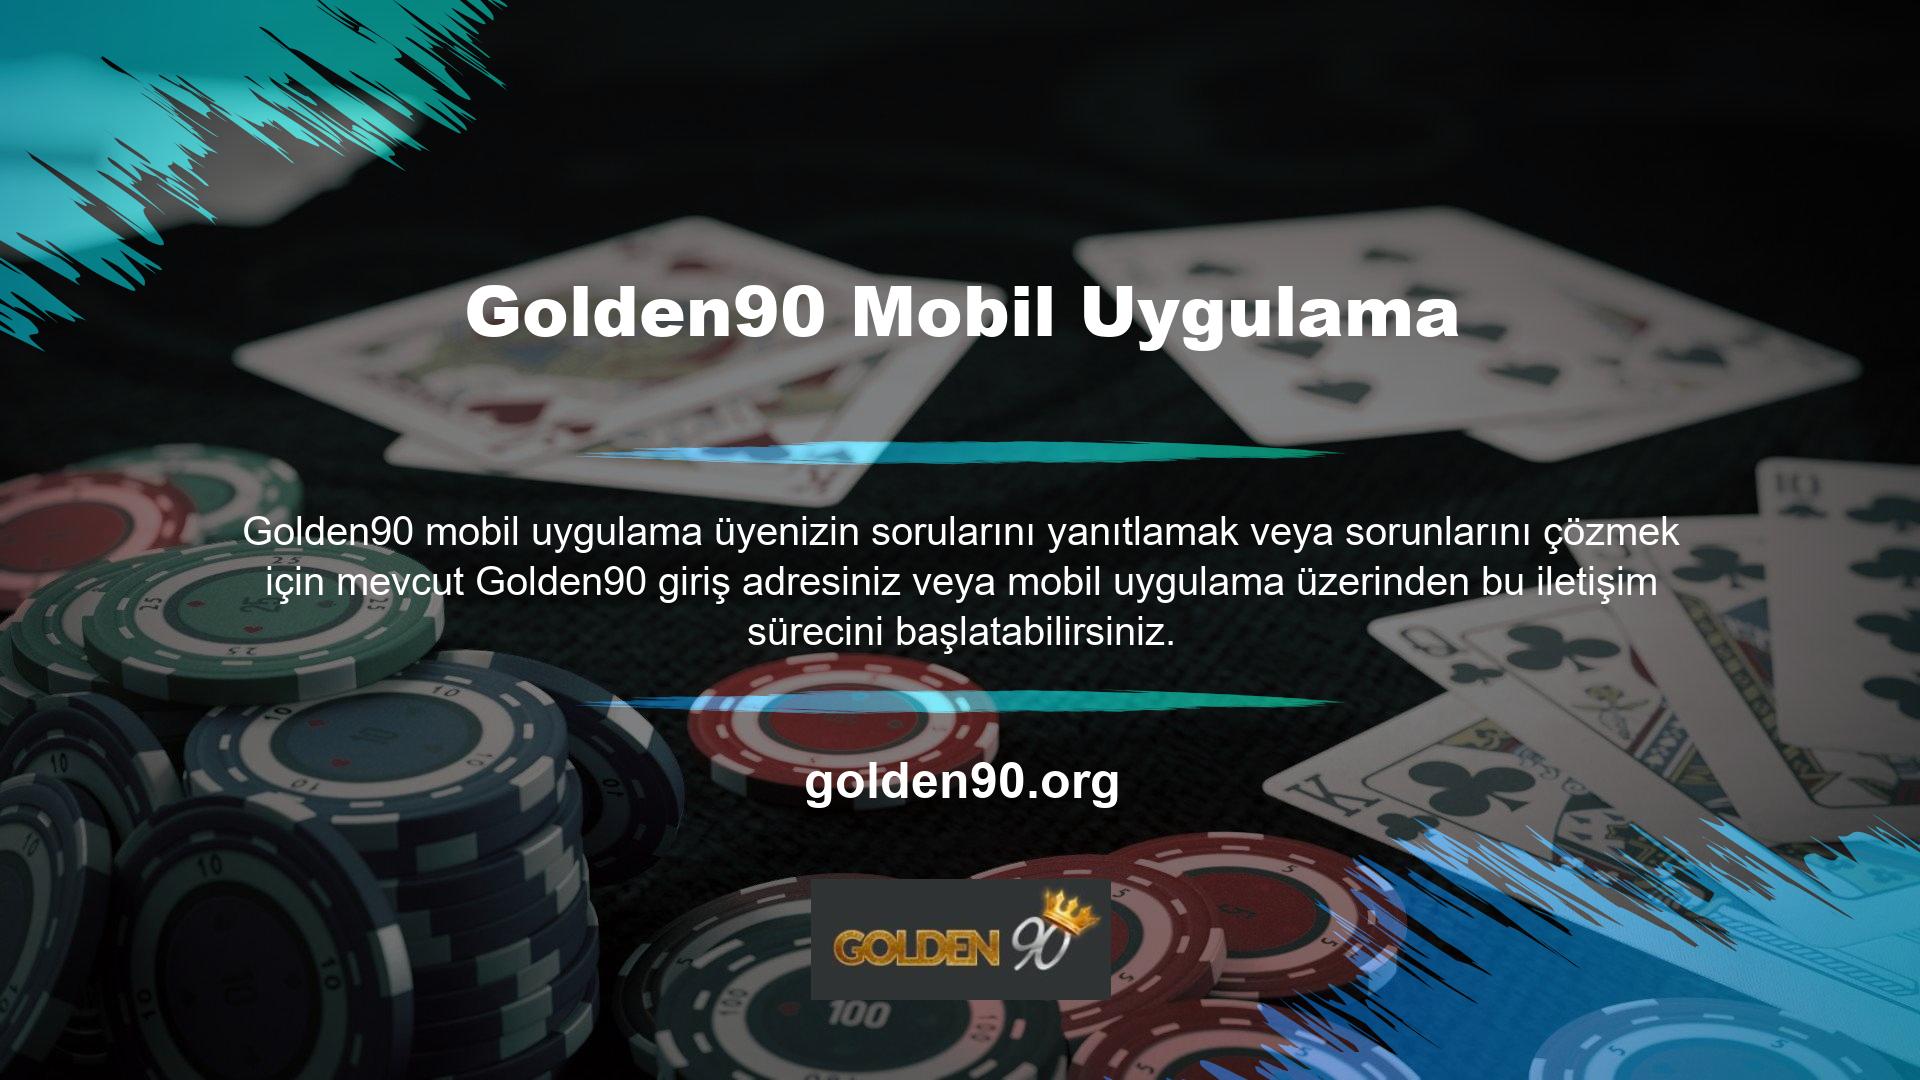 Bu sınırsız iletişim Golden90 üyeliğinin avantajlarından biridir ve para çekme işleminden bahise kadar her şeyi kapsar